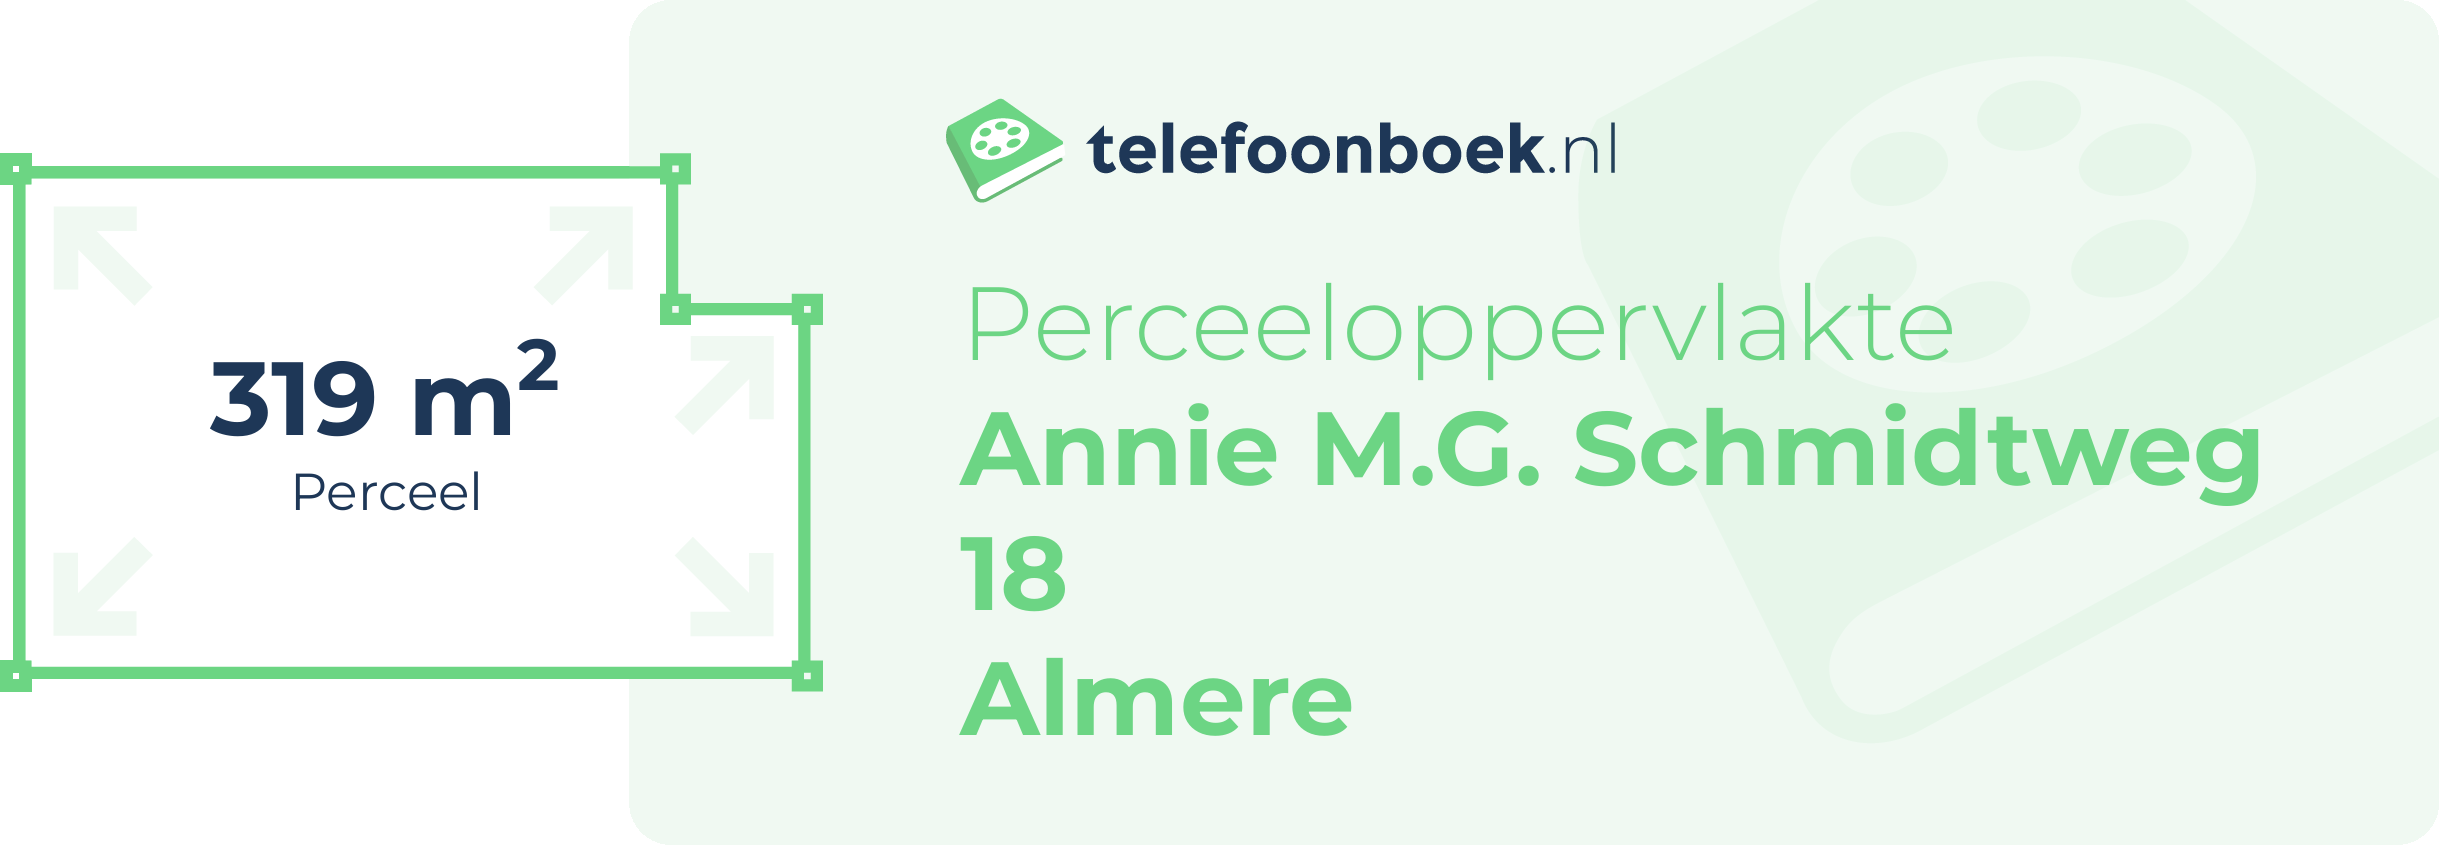 Perceeloppervlakte Annie M.G. Schmidtweg 18 Almere